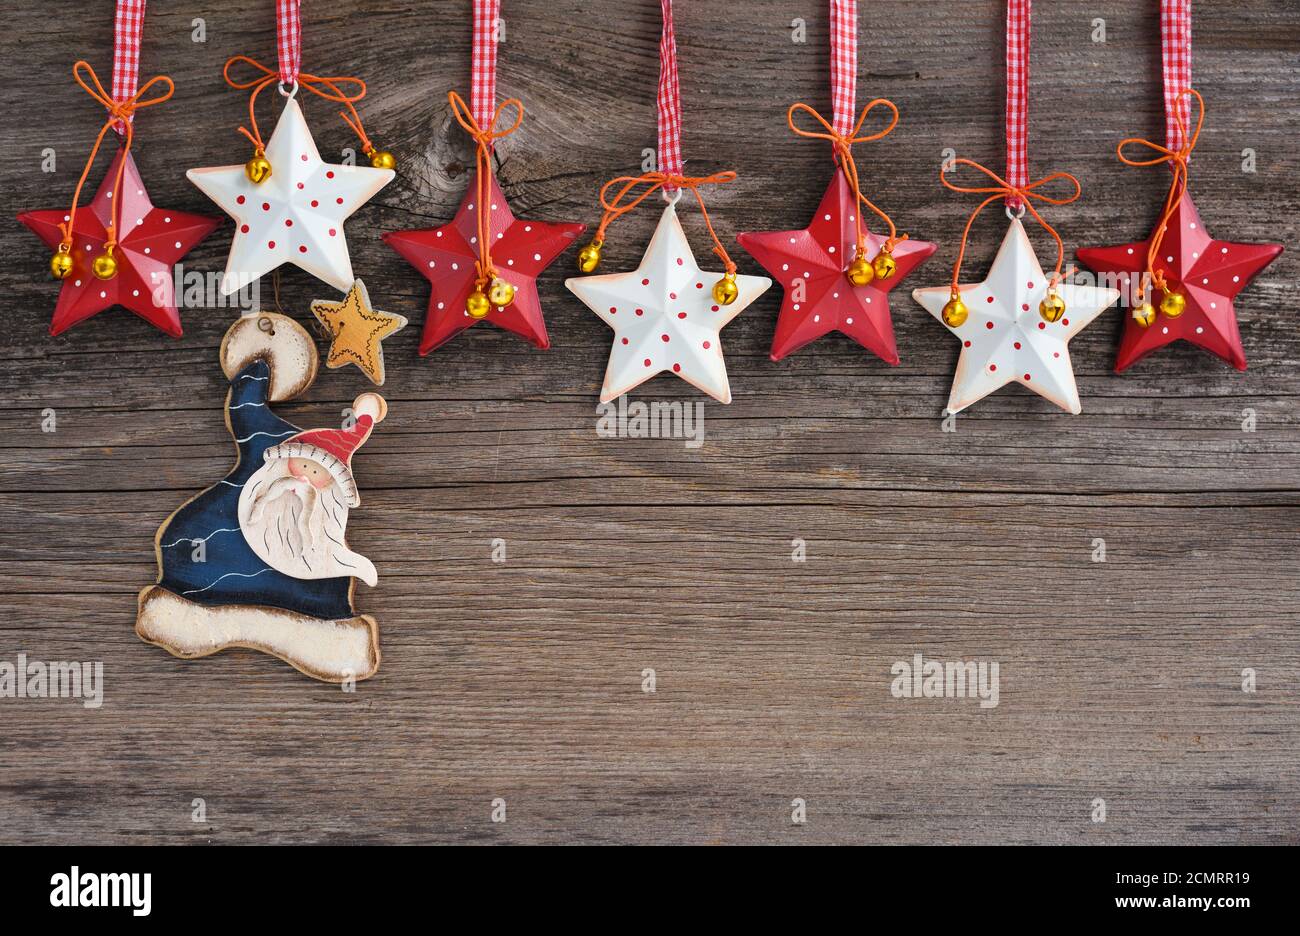 Père Noël avec décorations étoiles de Noël sur fond de bois. Carte de vœux de Noël ou du nouvel an. Banque D'Images